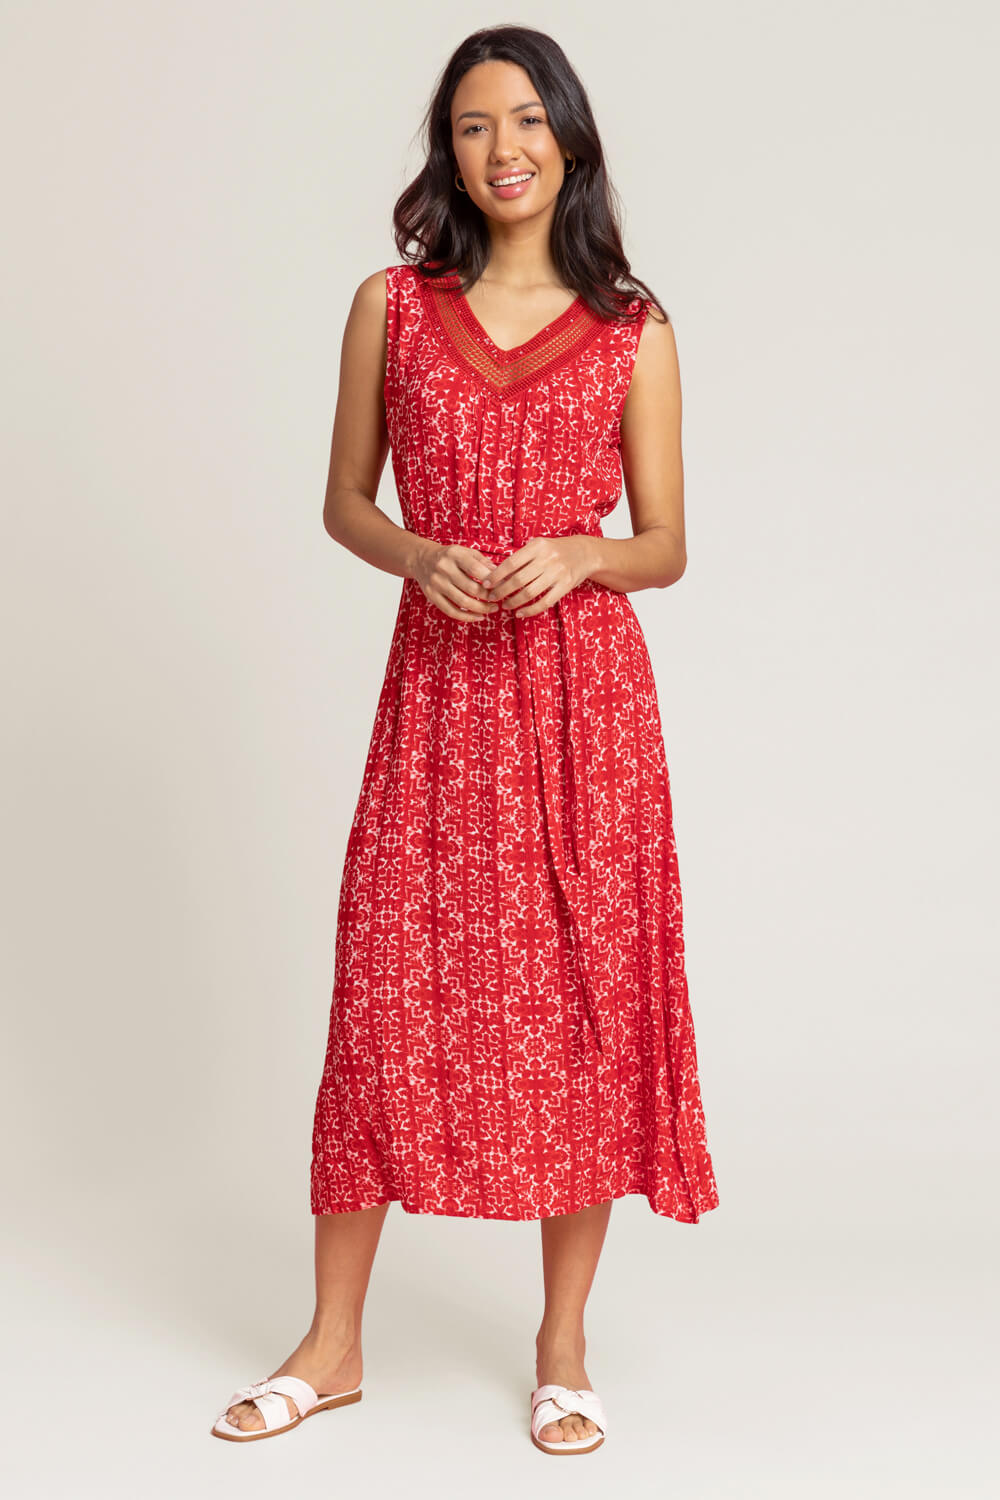 Geo Print Sequin Trim Midi Dress in Red - Roman Originals UK